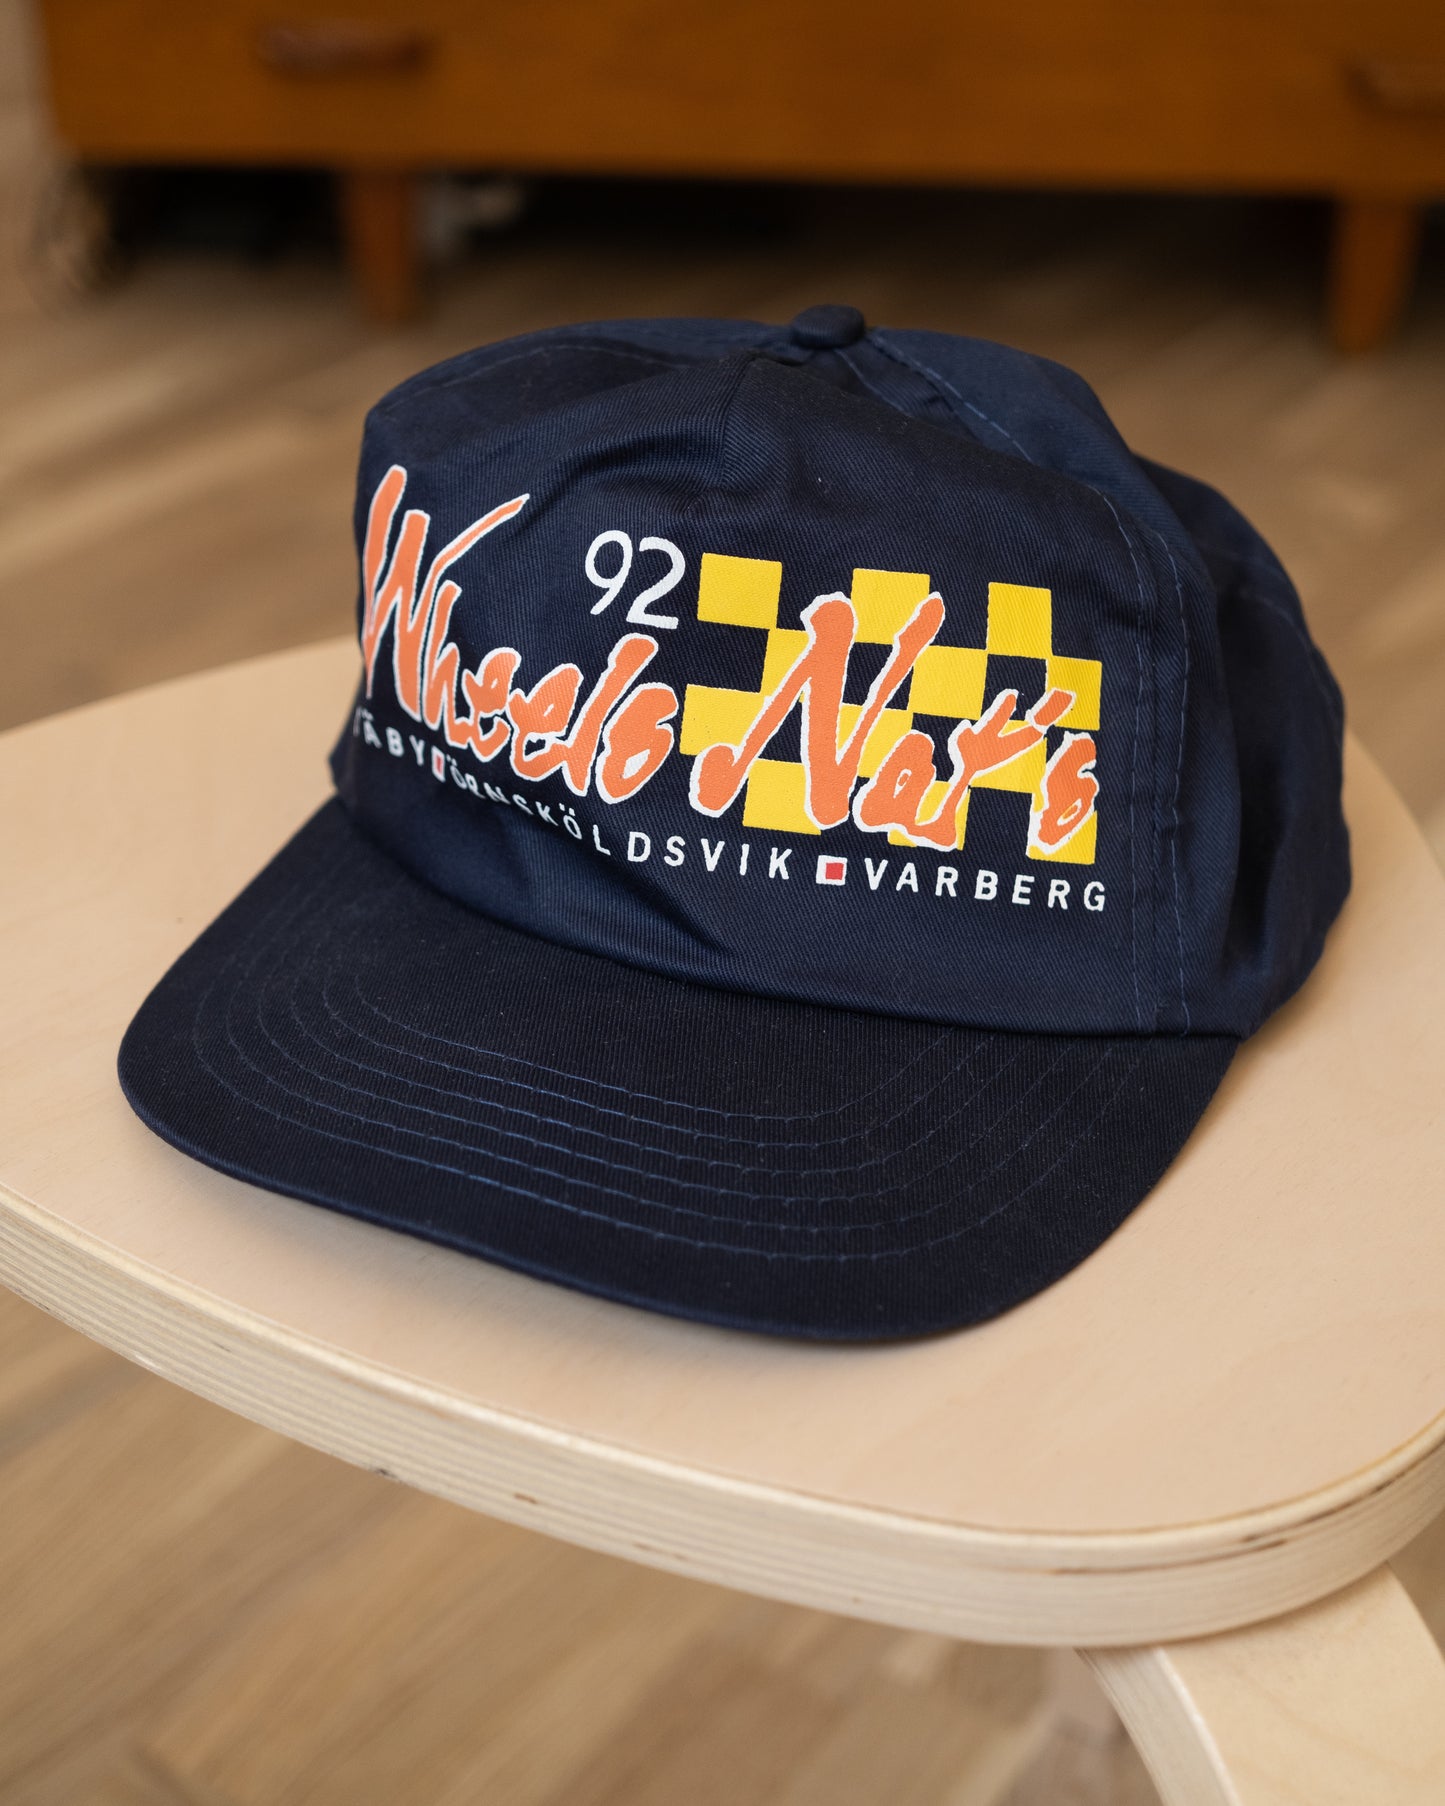 Wheels Nationals 1992 Deadstock Vintage Snapback Hat